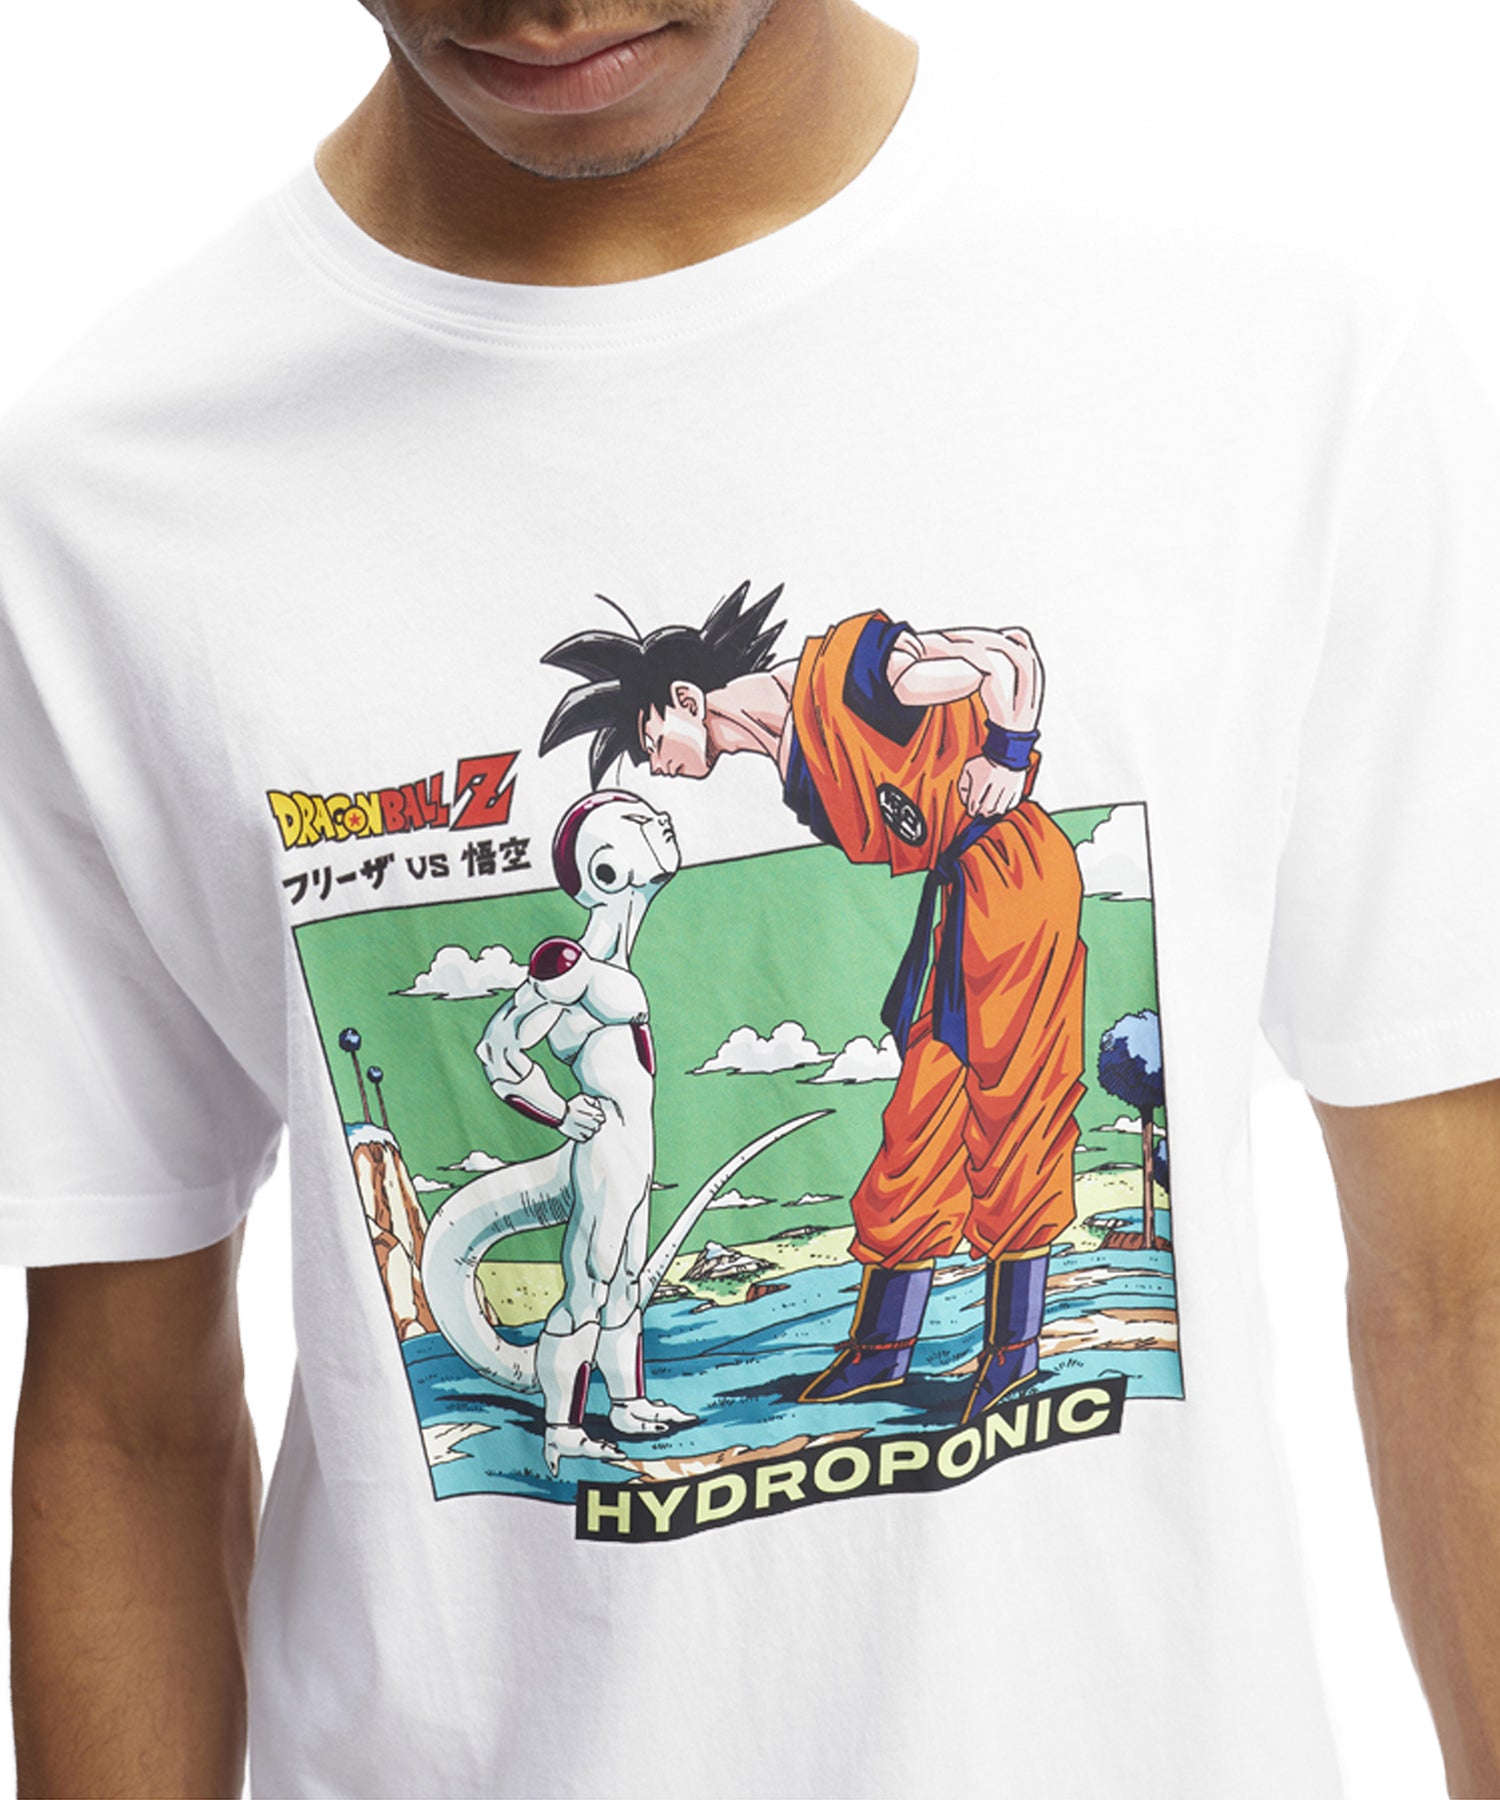 hydroponic-camiseta--dragon-ball-z-frieza-vs-goku-color-blanco-manga-corta-serigrafía-en-el-pecho-dragon-ball-z